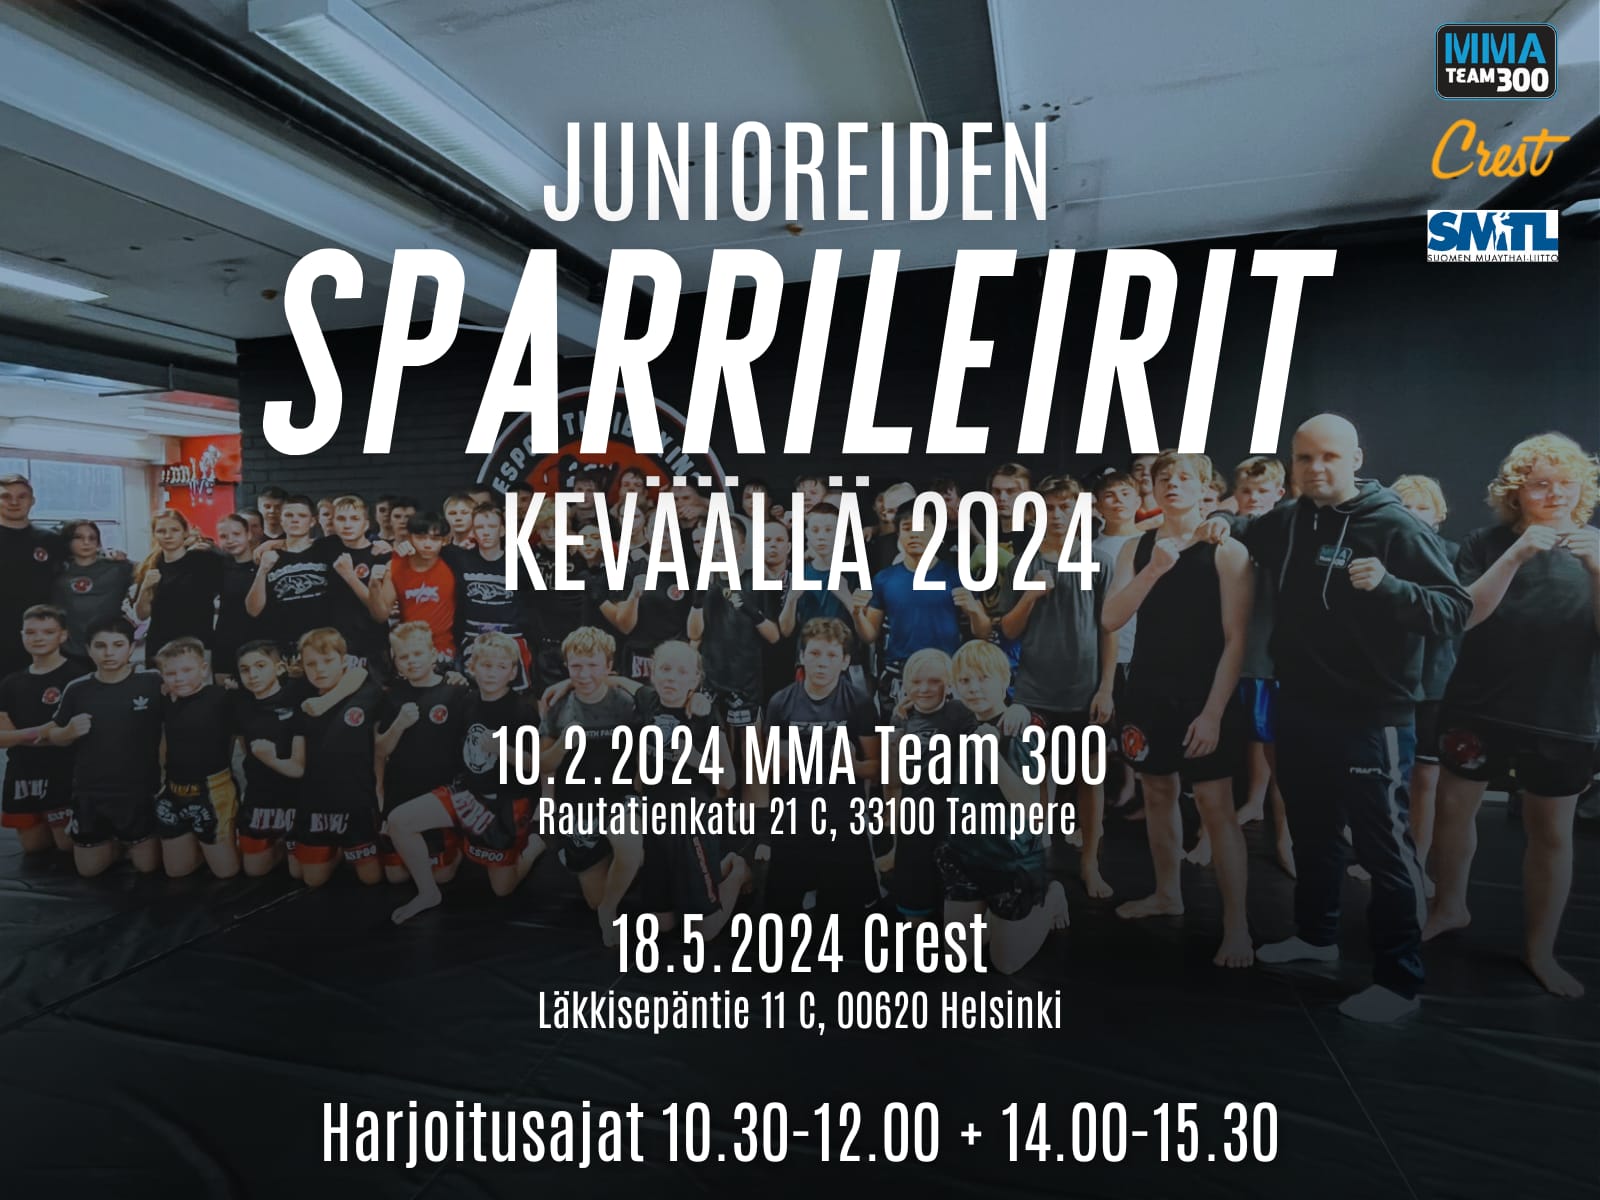 Ilmoittautuminen 10.2. pidettävälle junioreiden sparrileirille on käynnissä Suomisportissa